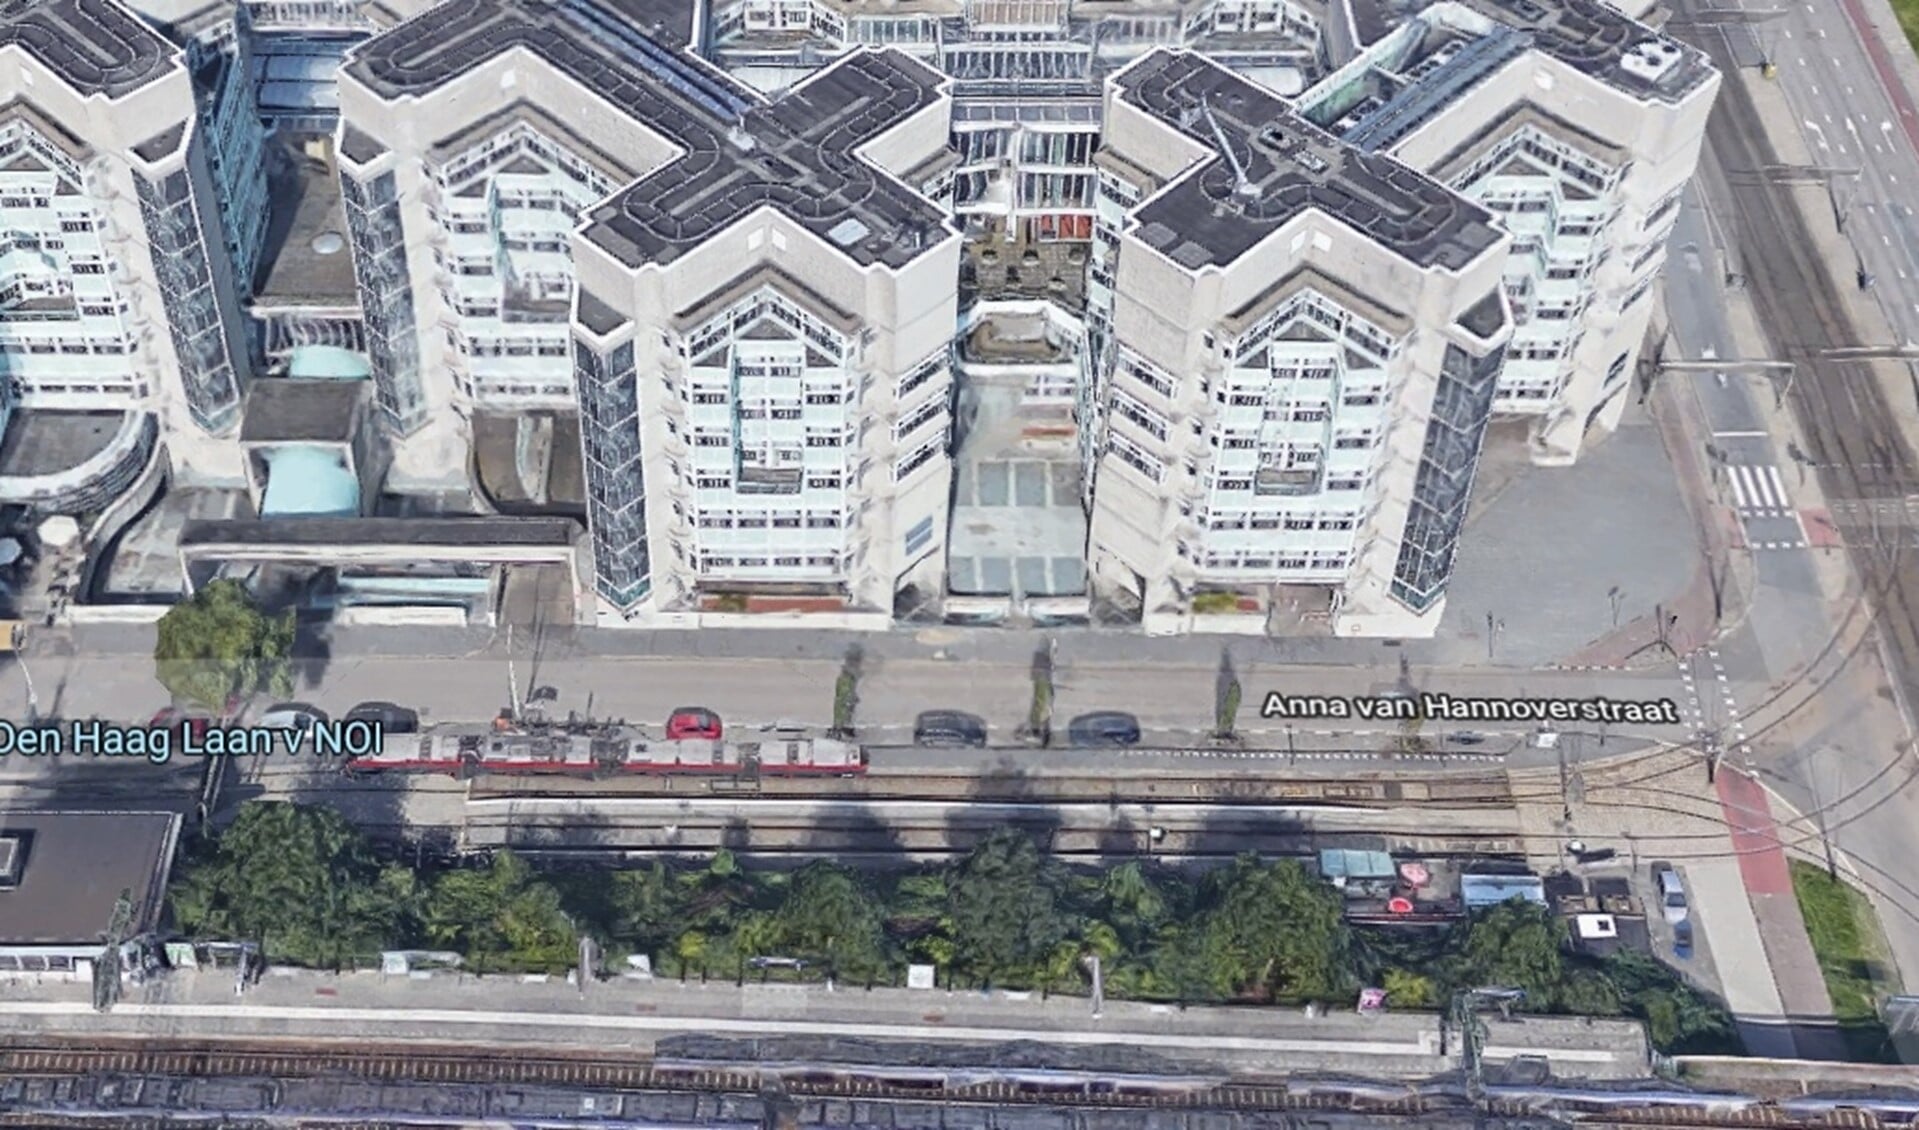 Het voormalige ministerie van Sociale Zaken (Foto: Google Maps)